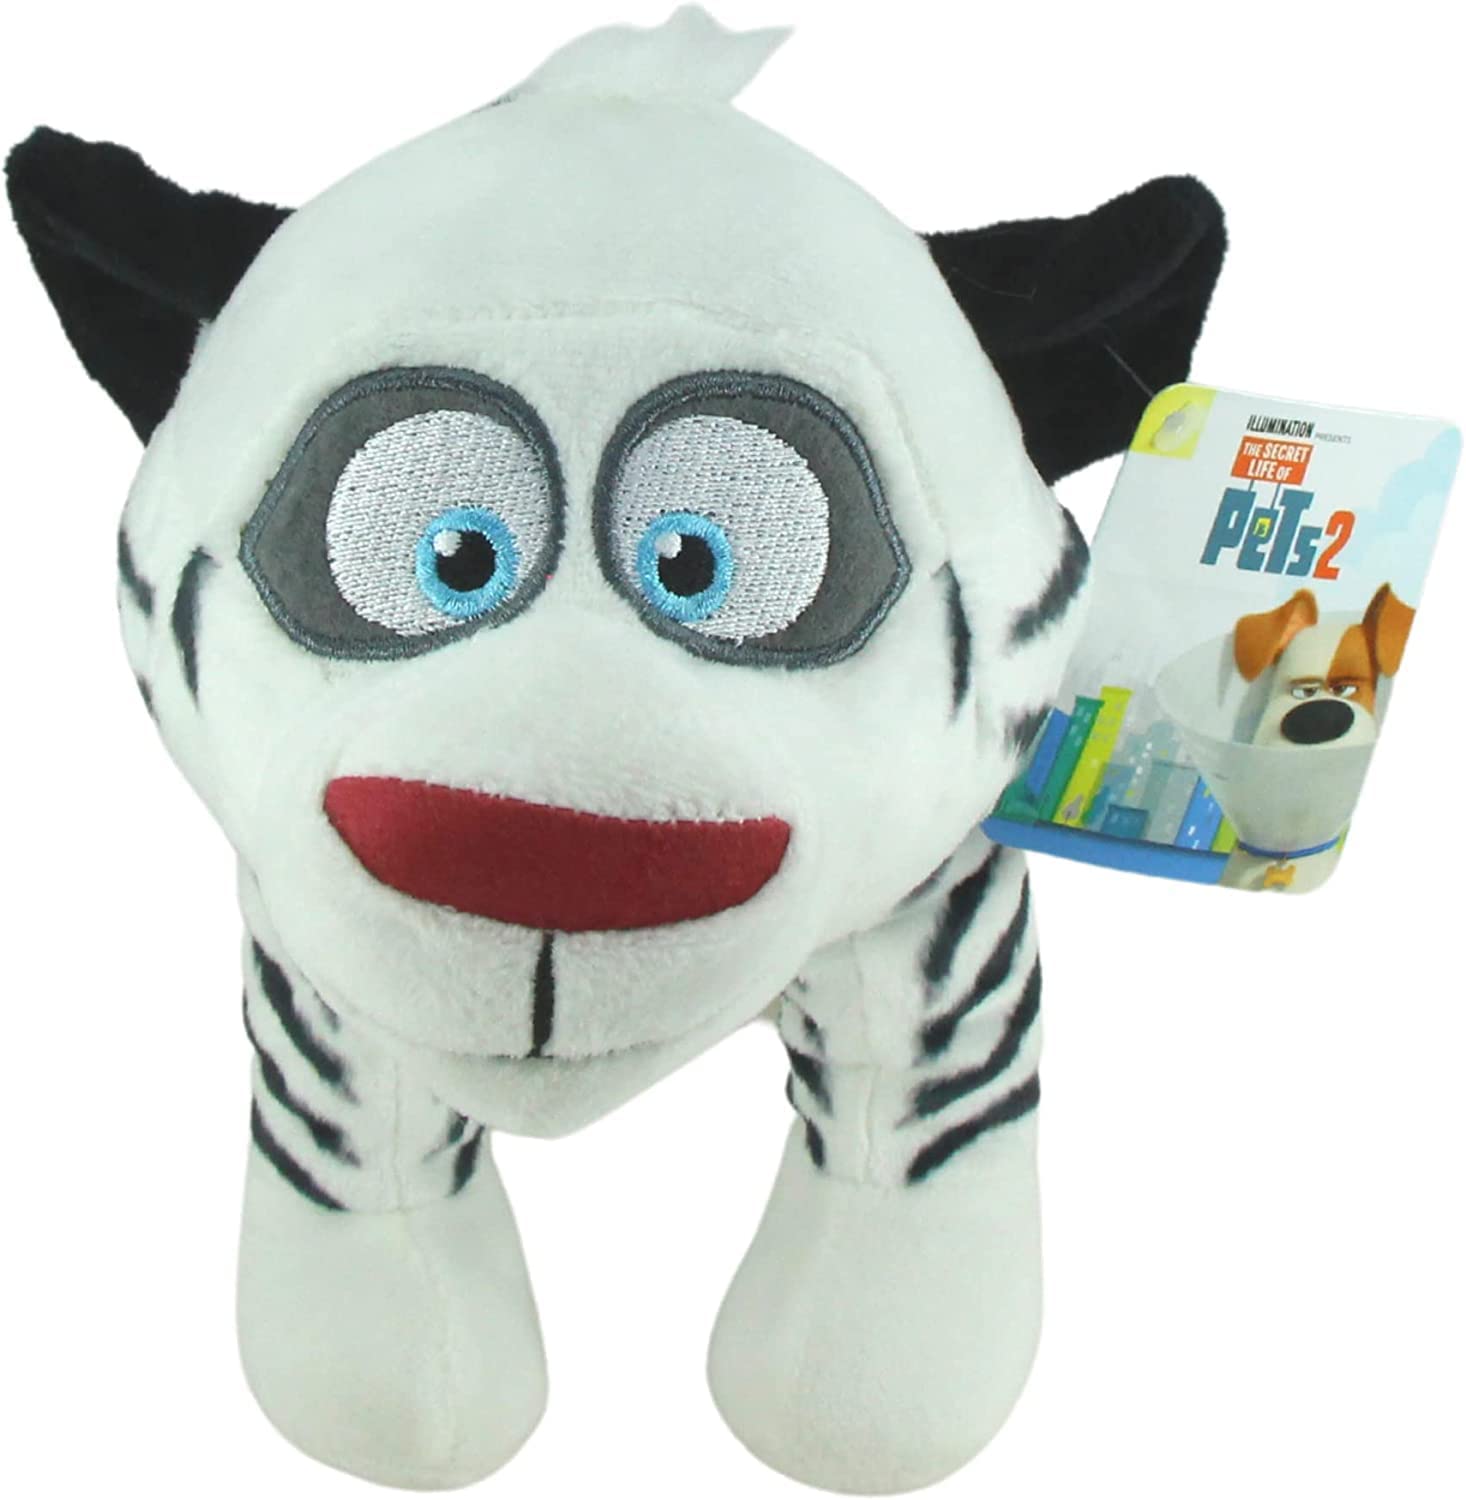 Miffy Adventures Talking Plush Toys Set of All 4 - Toptoys2u